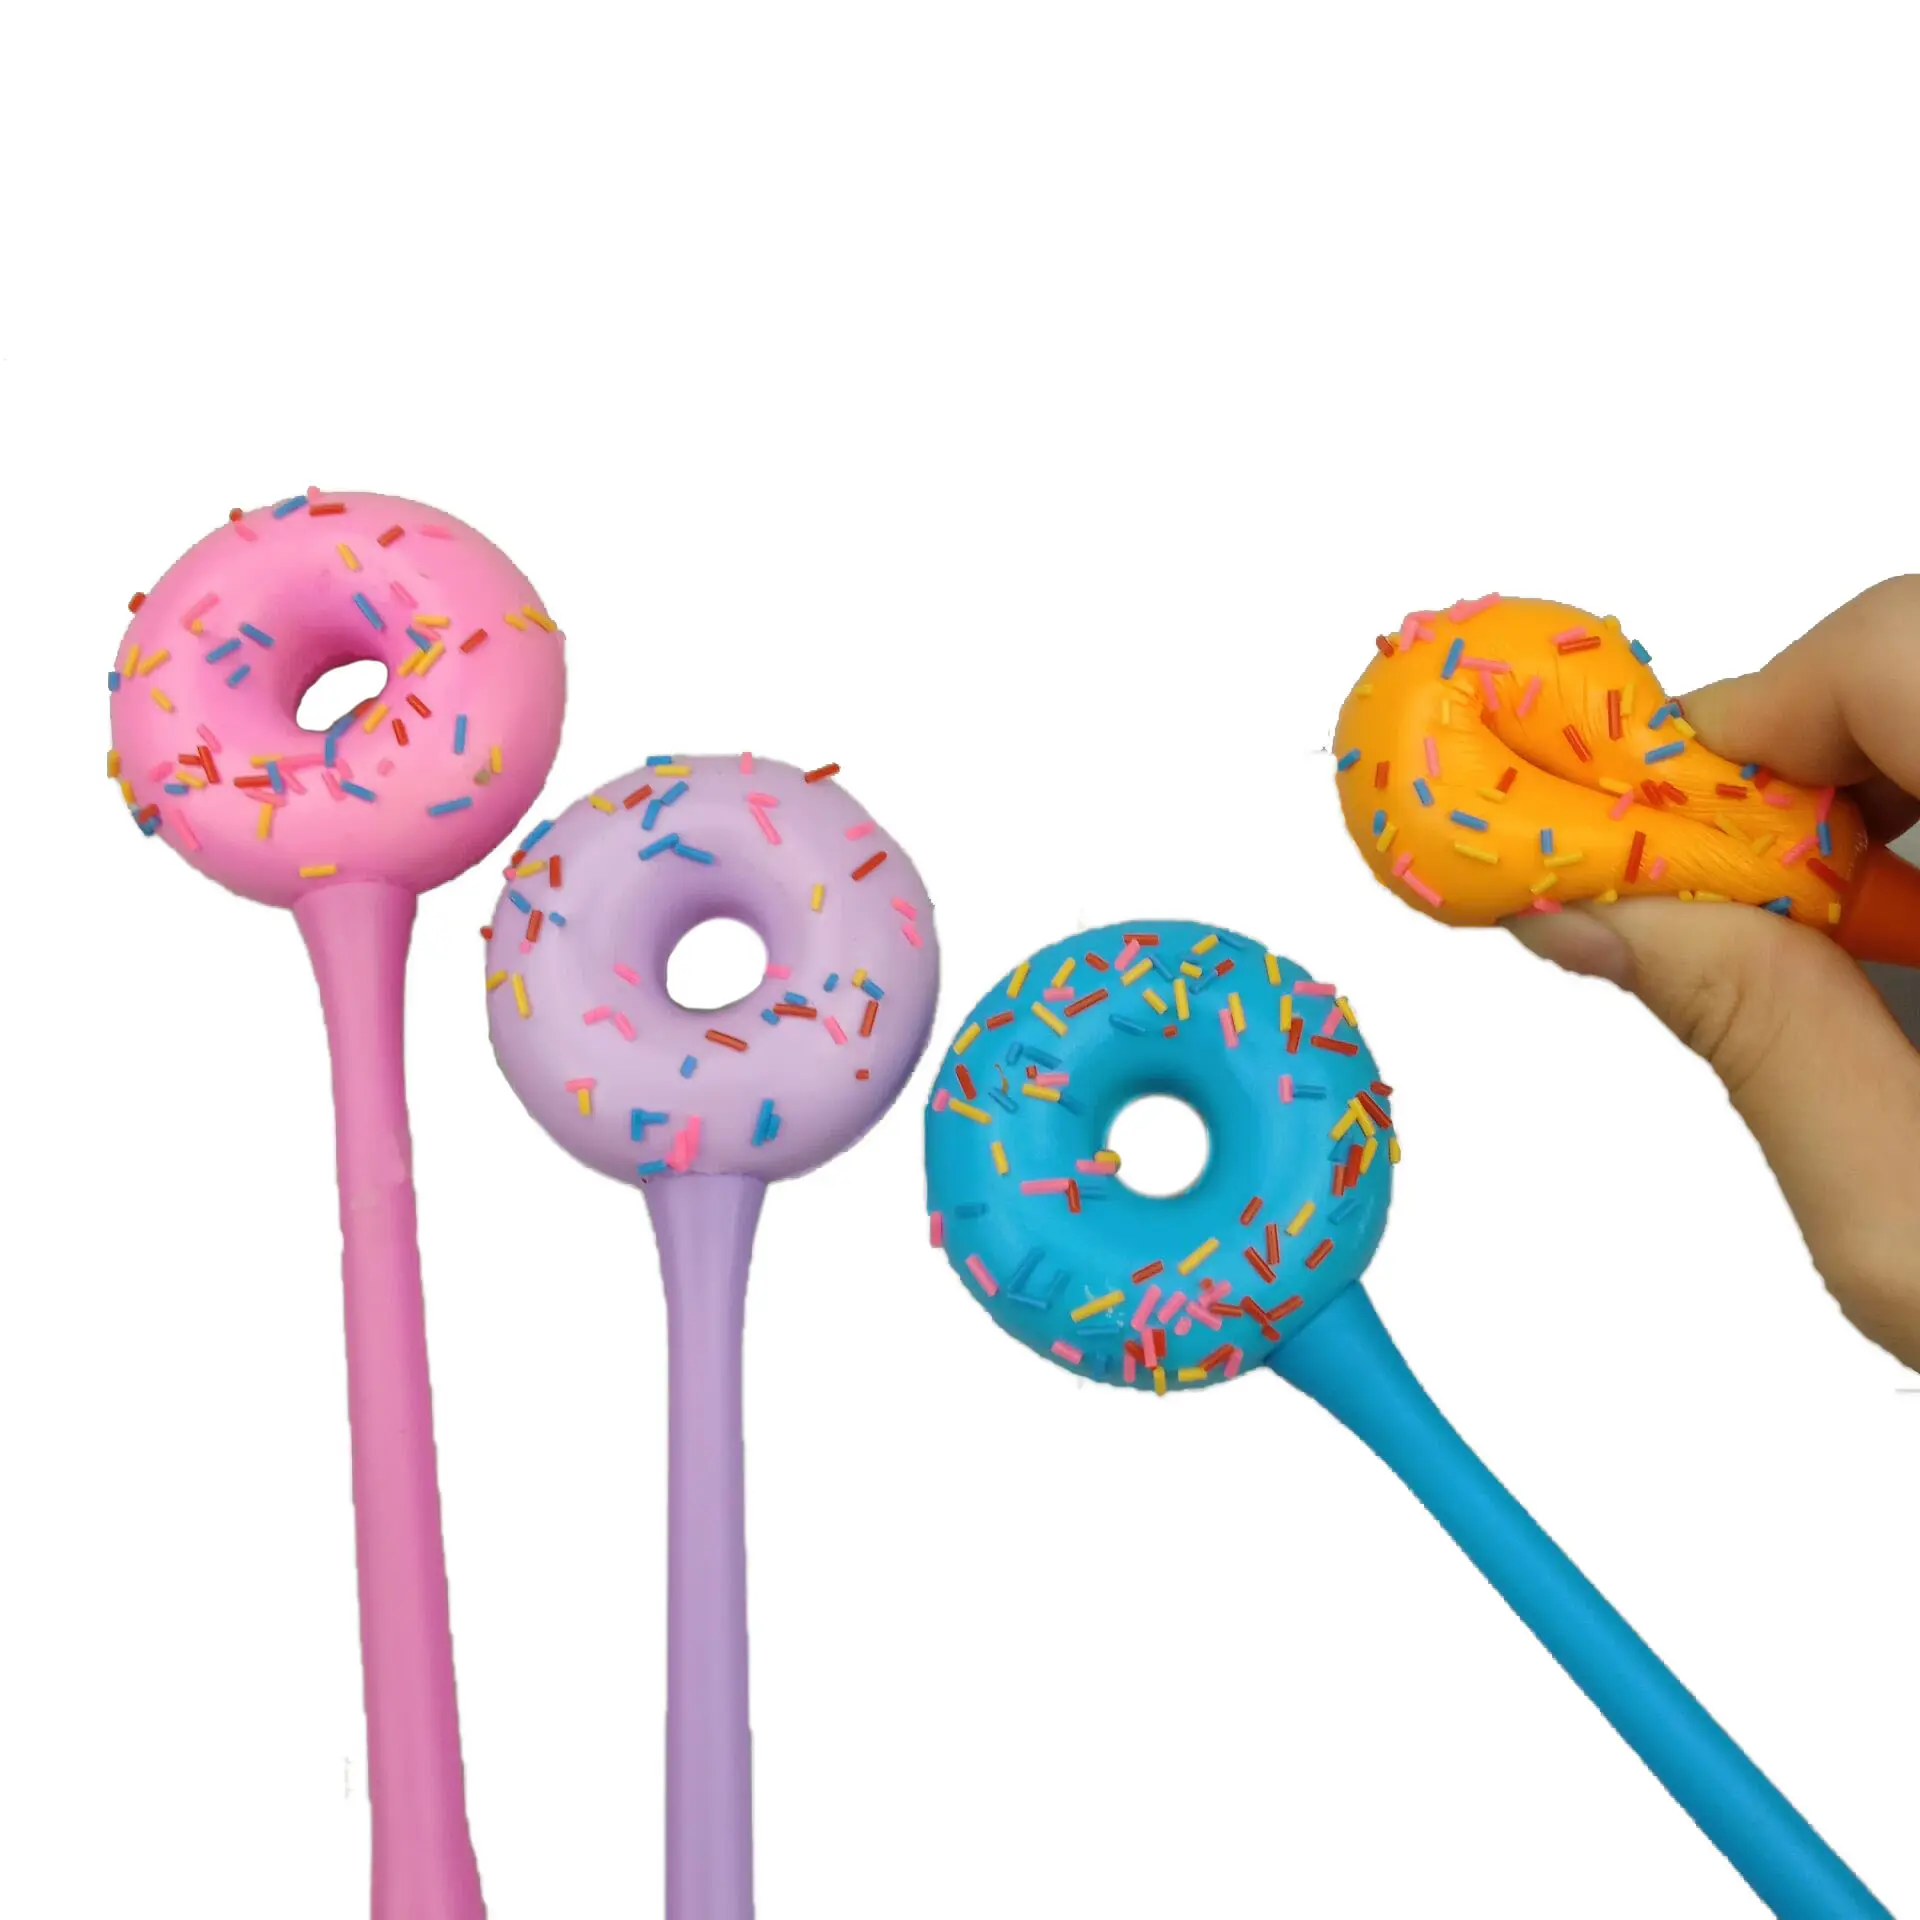 Atacado personalizado LIMPO e BOA qualidade Novidade Fantasia Squishy Donut Relief Colorido PU Canetas para Crianças.